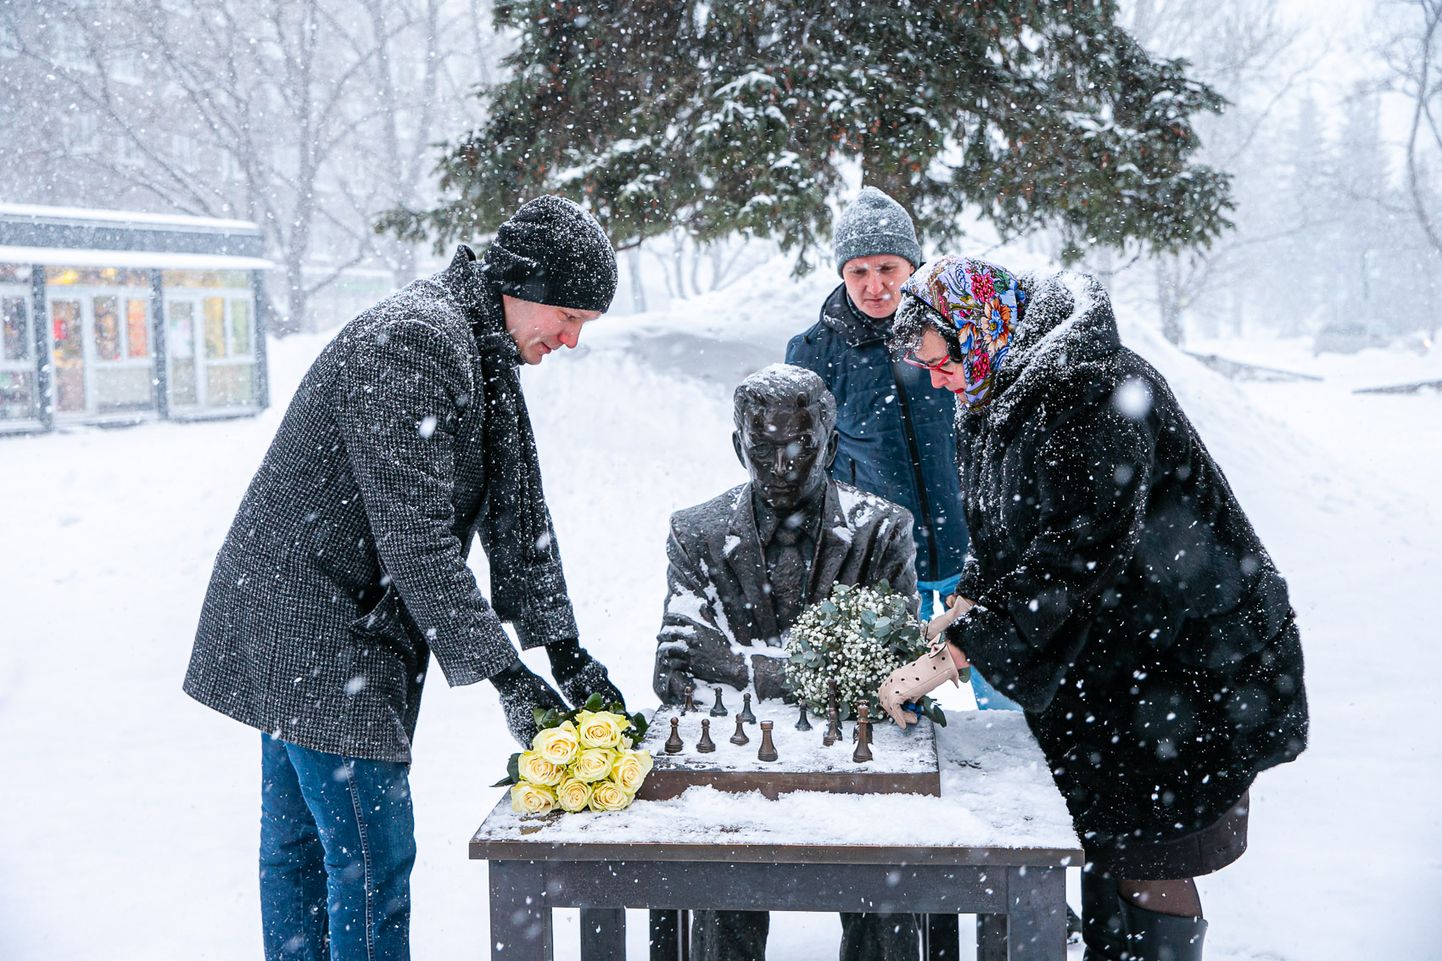 Максим Ильин и Катри Райк принесли цветы к памятнику Паулю Кересу в его день рождения.